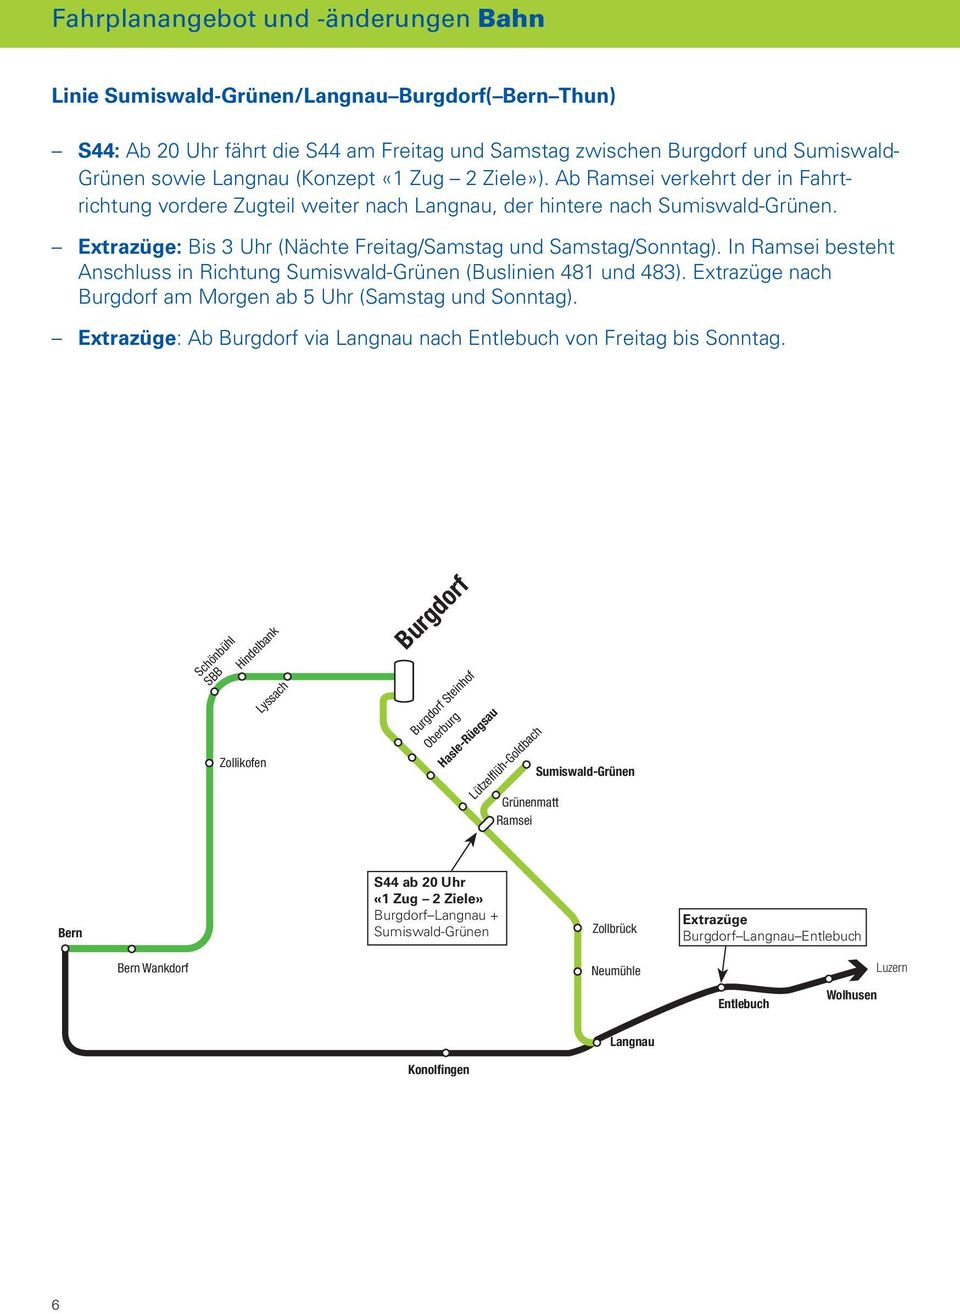 Extrazüge: Bis 3 Uhr (Nächte Freitag/Samstag und Samstag/Sonntag). In Ramsei besteht Anschluss in Richtung Sumiswald-Grünen (Buslinien 481 und 483).